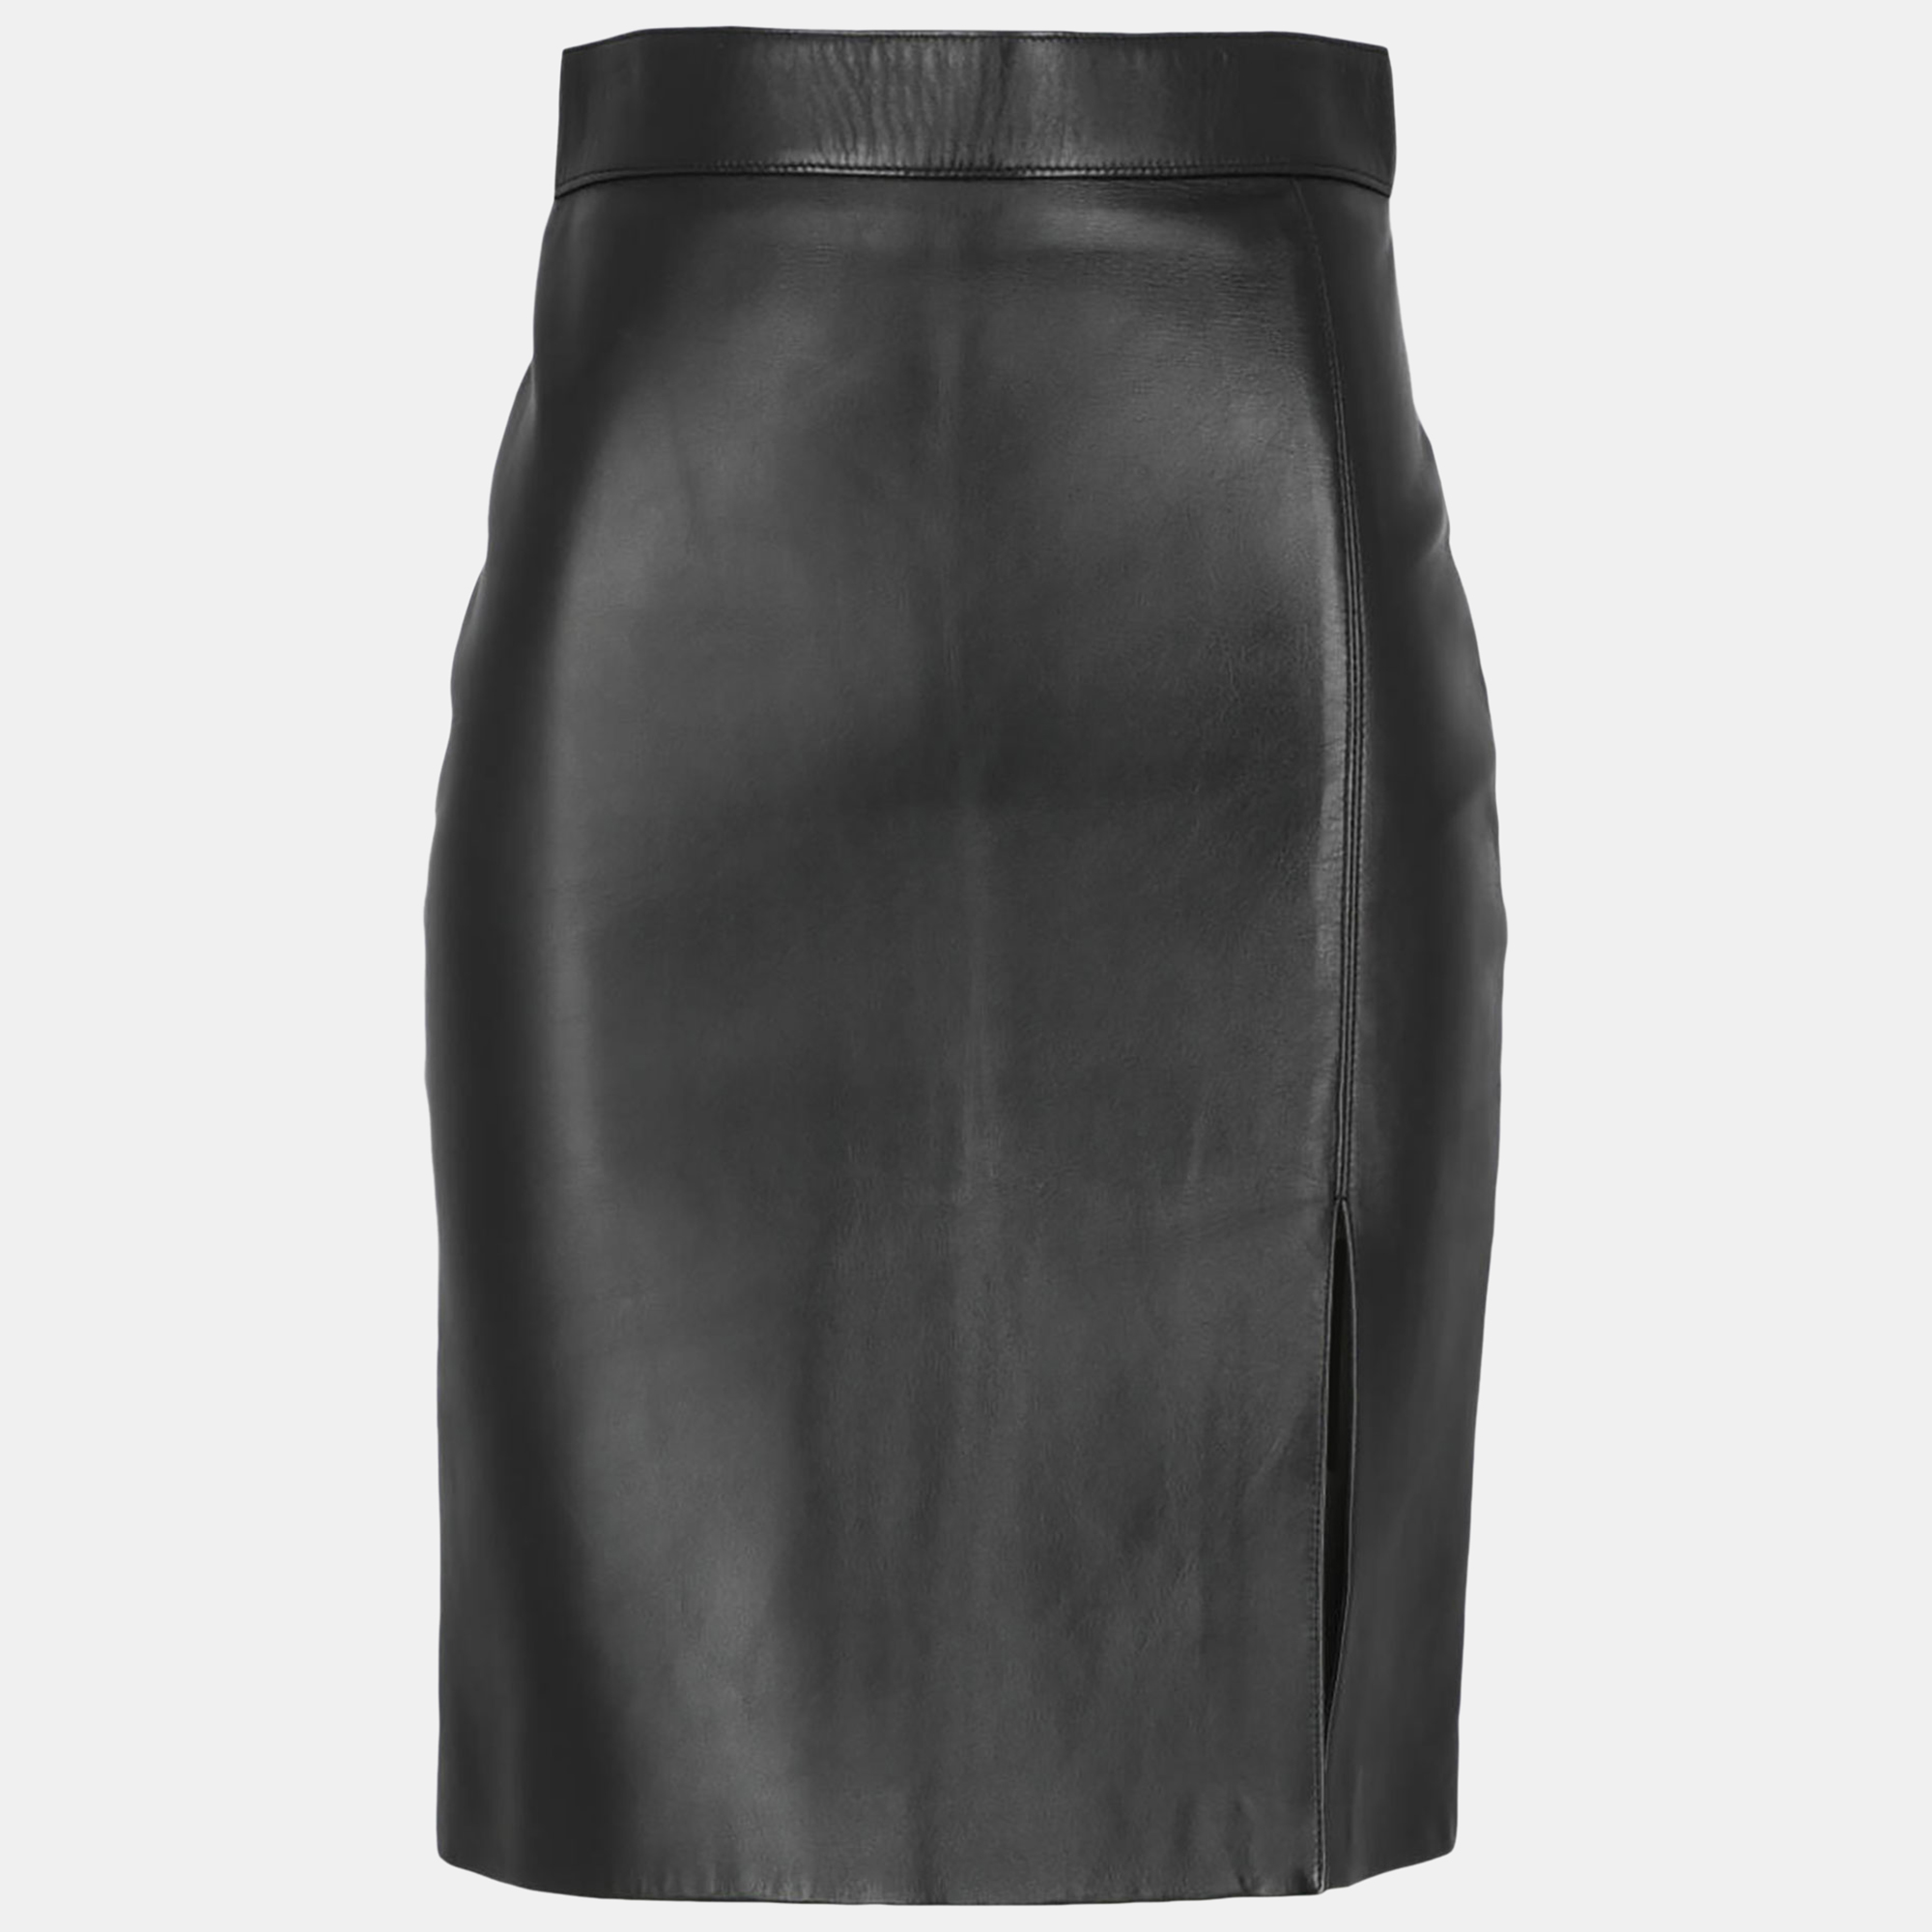 Celine  Women's Leather Midi Skirt - Black - S